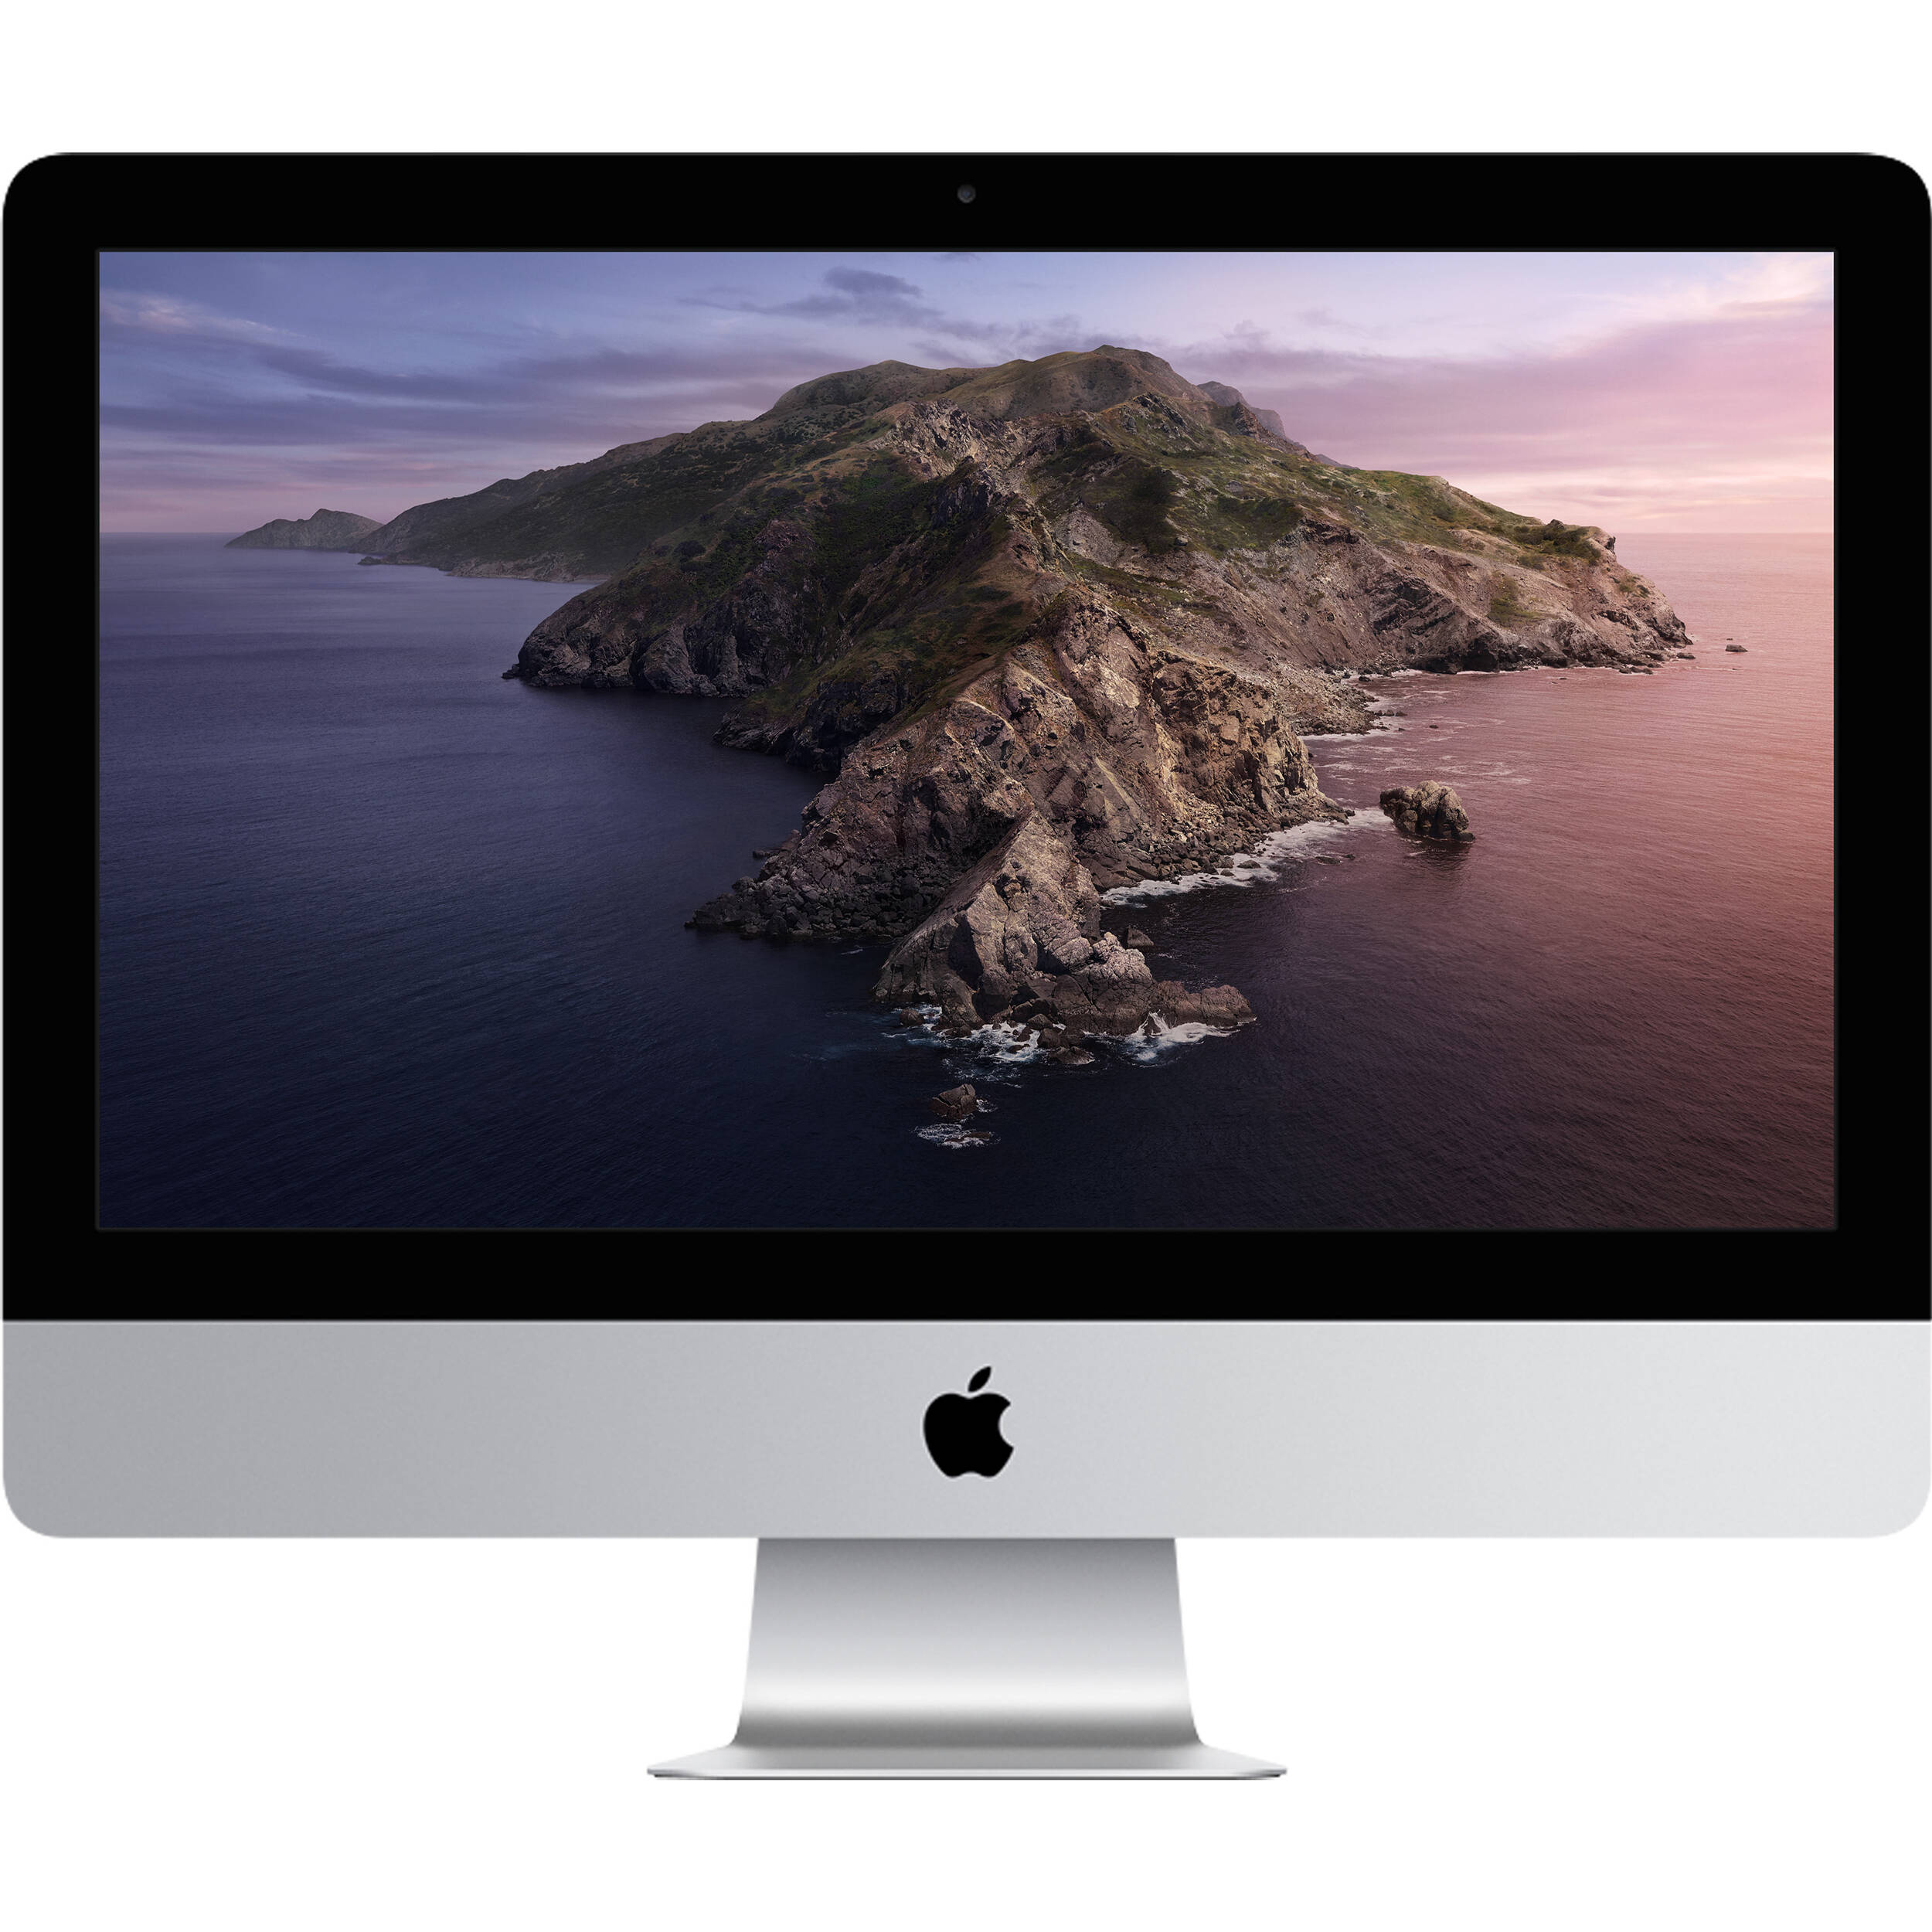 کامپیوتر همه کاره 21.5 اینچی اپل مدل iMac CTO 2017